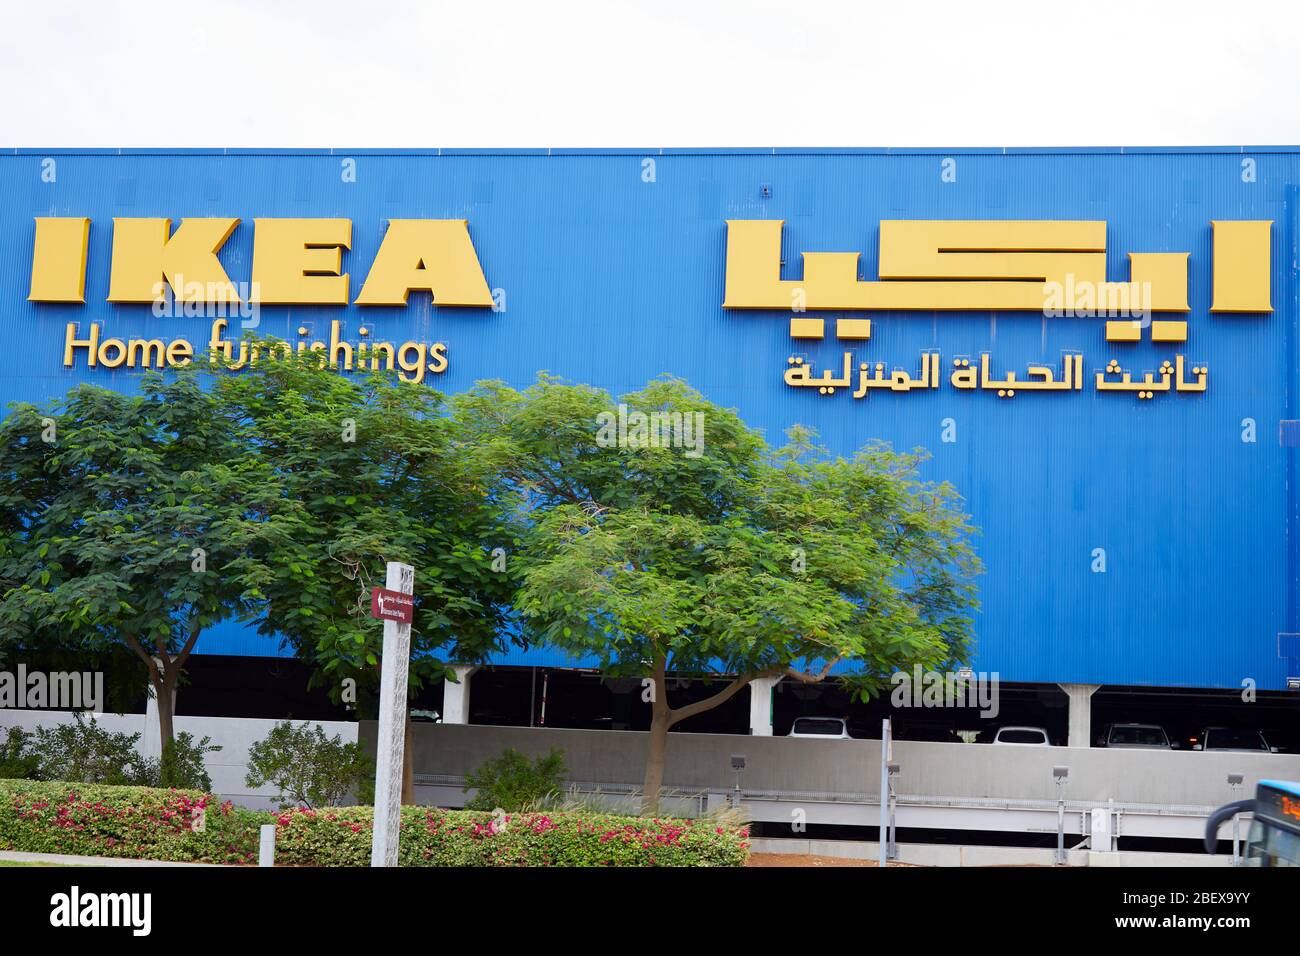 DUBAÏ, ÉMIRATS ARABES UNIS - 21 NOVEMBRE 2019 : IKEA maison ameublement bleu bâtiment avec logo arabe jaune Banque D'Images